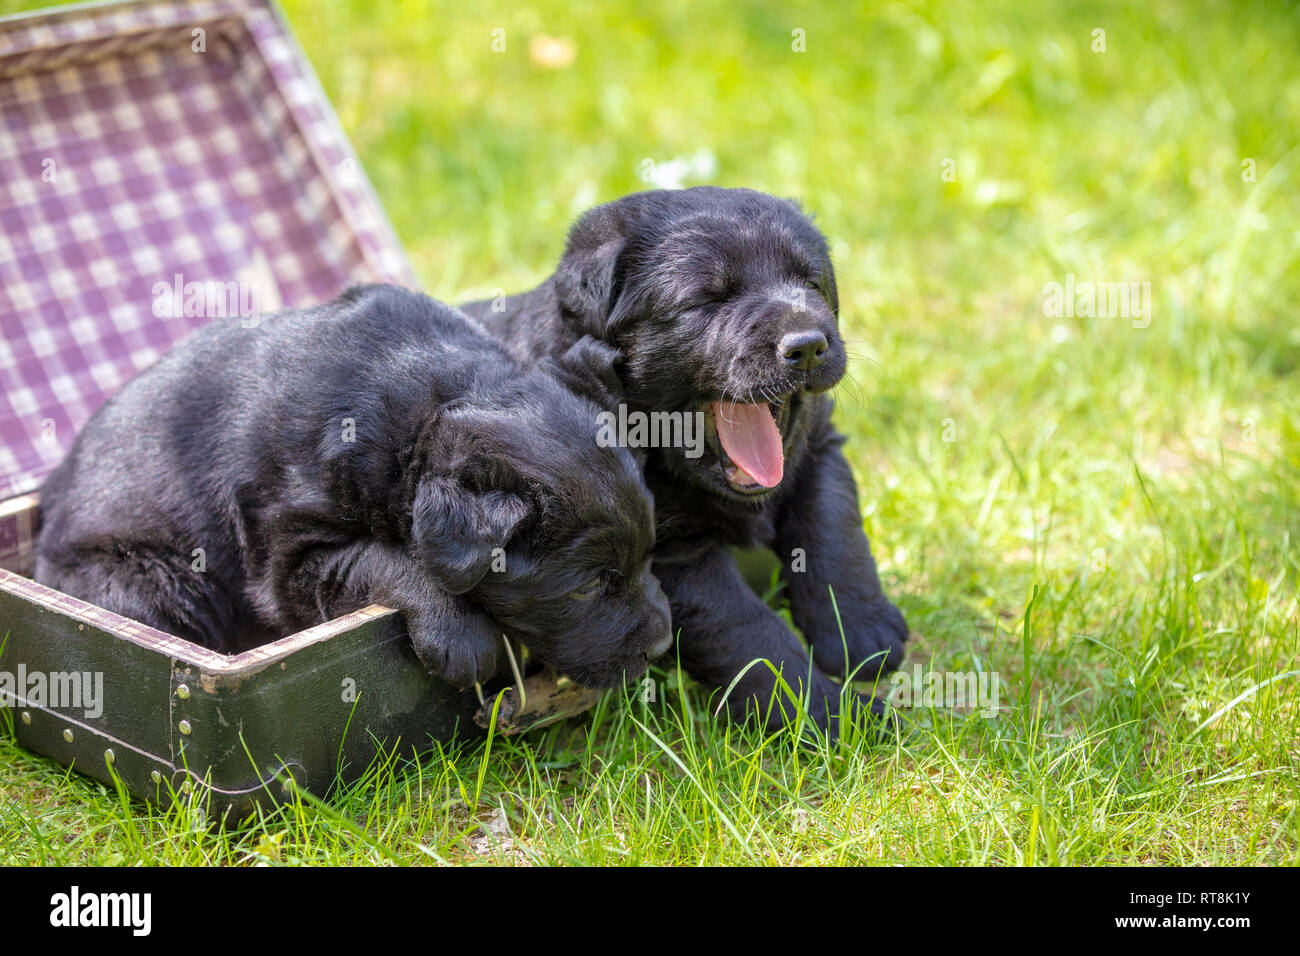 Zwei schwarze Labrador Retriever Welpen sitzen in einem Koffer auf dem Gras im Sommer Garten Stockfoto